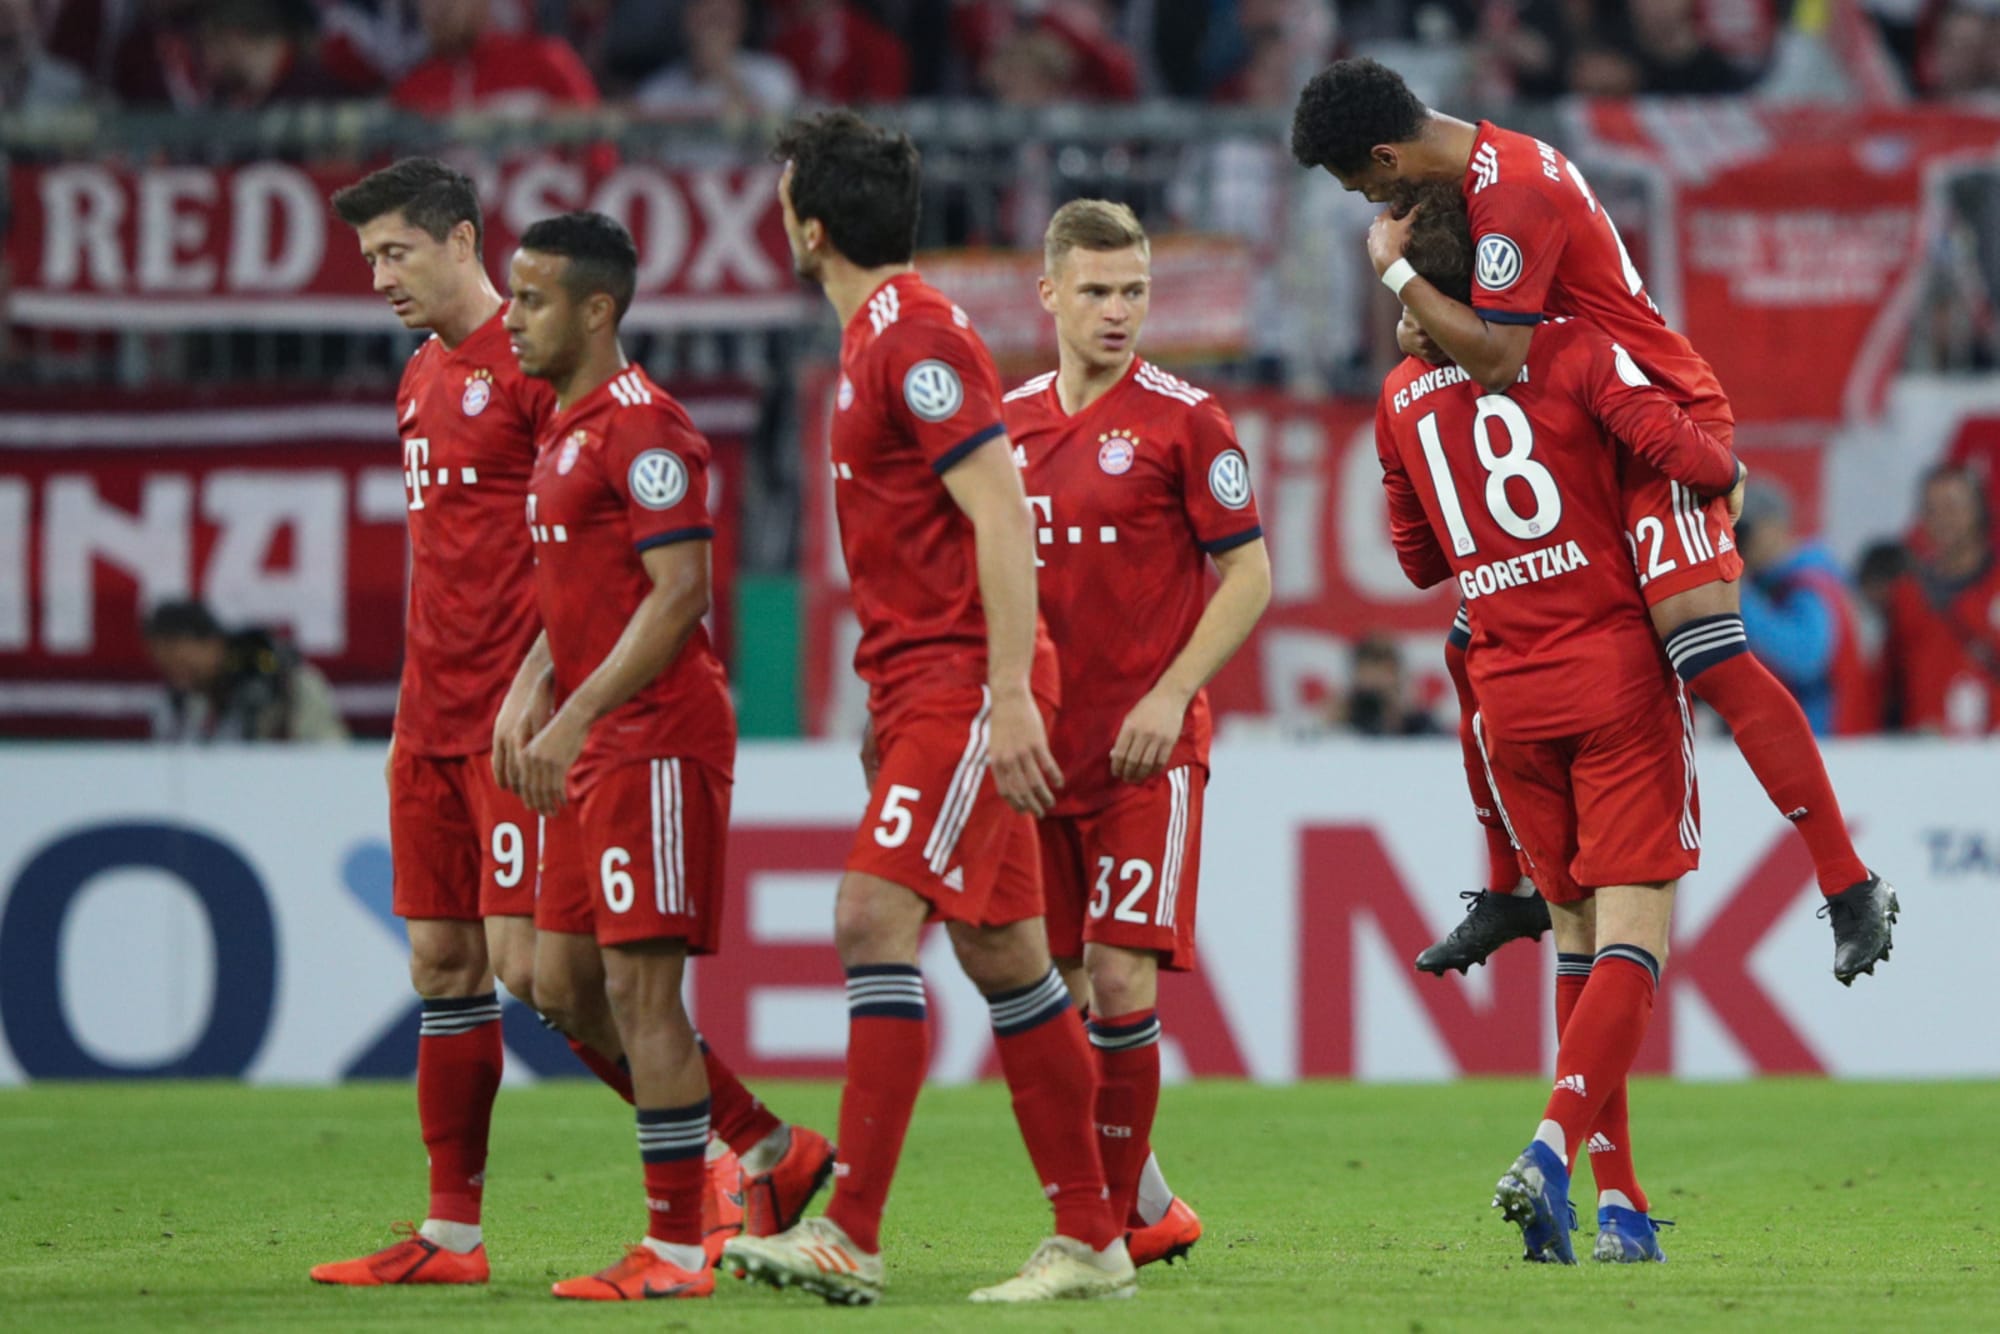 Bayern Munich edge past Heidenheim in DFB Pokal -- Player grades - Page 2